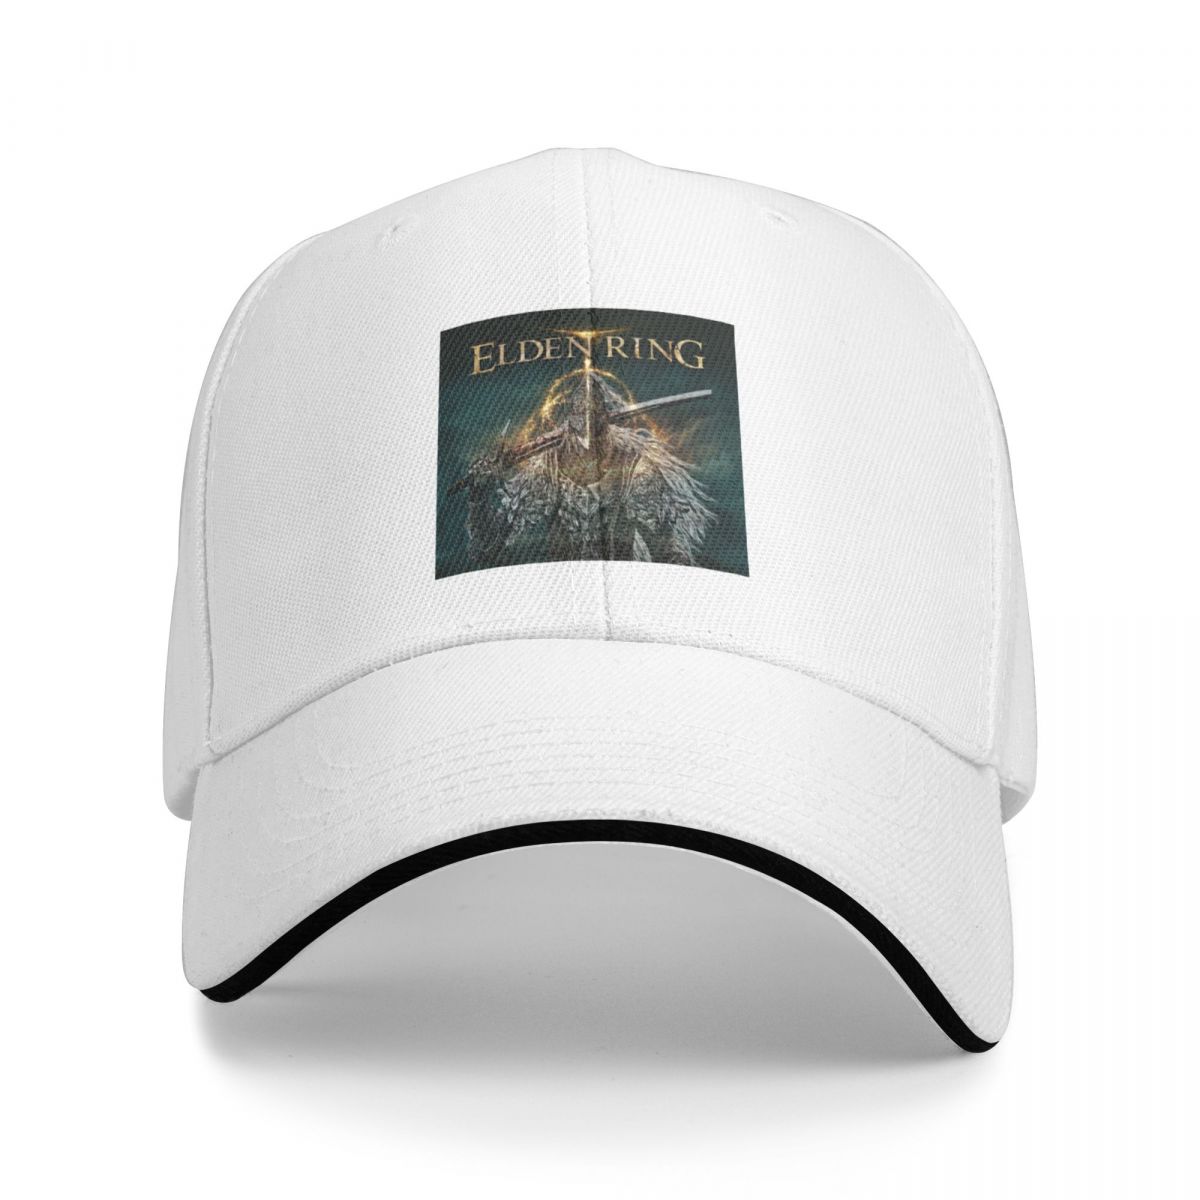 Elden Ring Cap Baseball Cap hat luxury brand military tactical cap Boy cap Women s - Elden Ring Merch